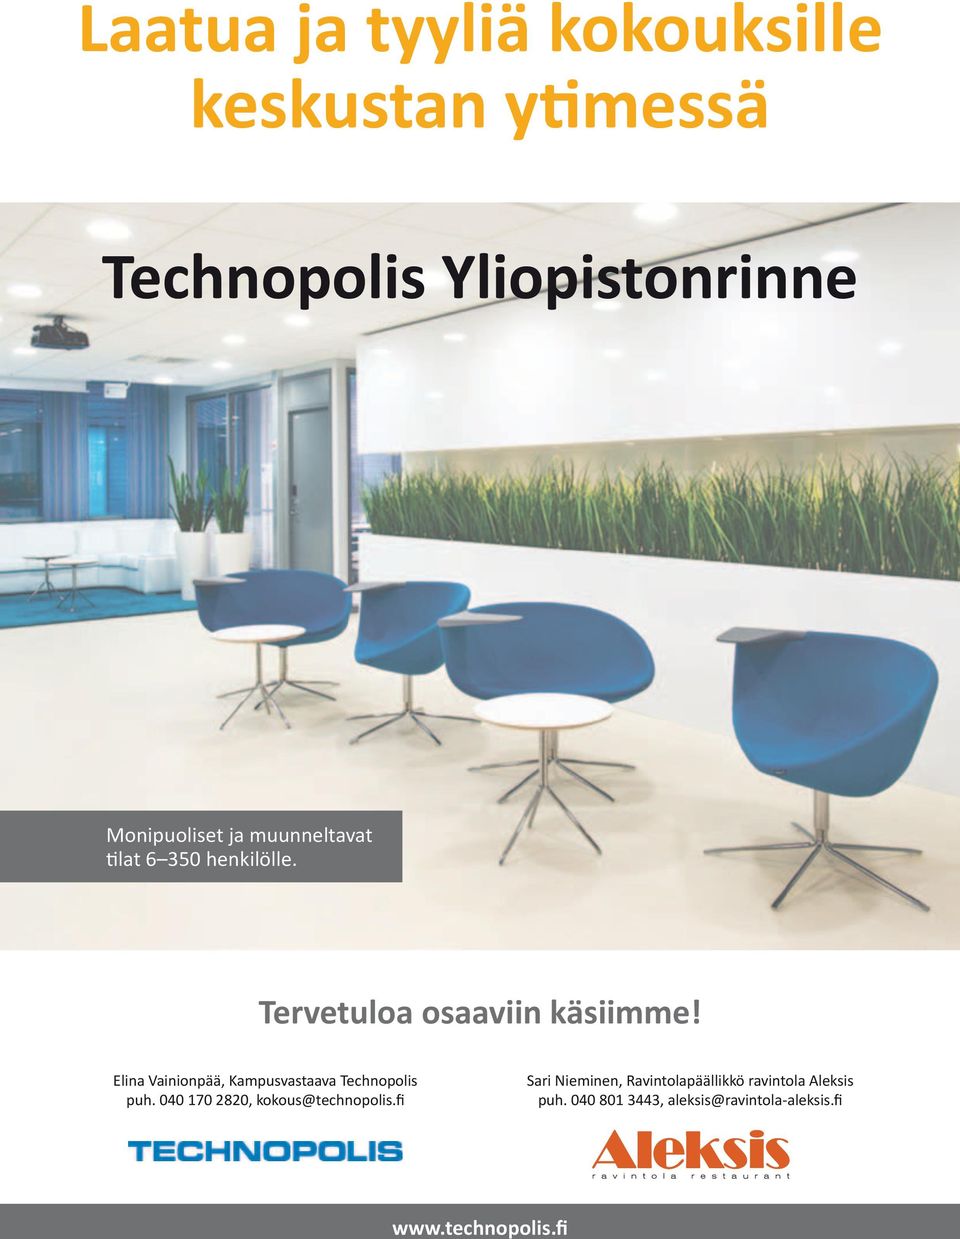 Elina Vainionpää, Kampusvastaava Technopolis puh. 040 170 2820, kokous@technopolis.